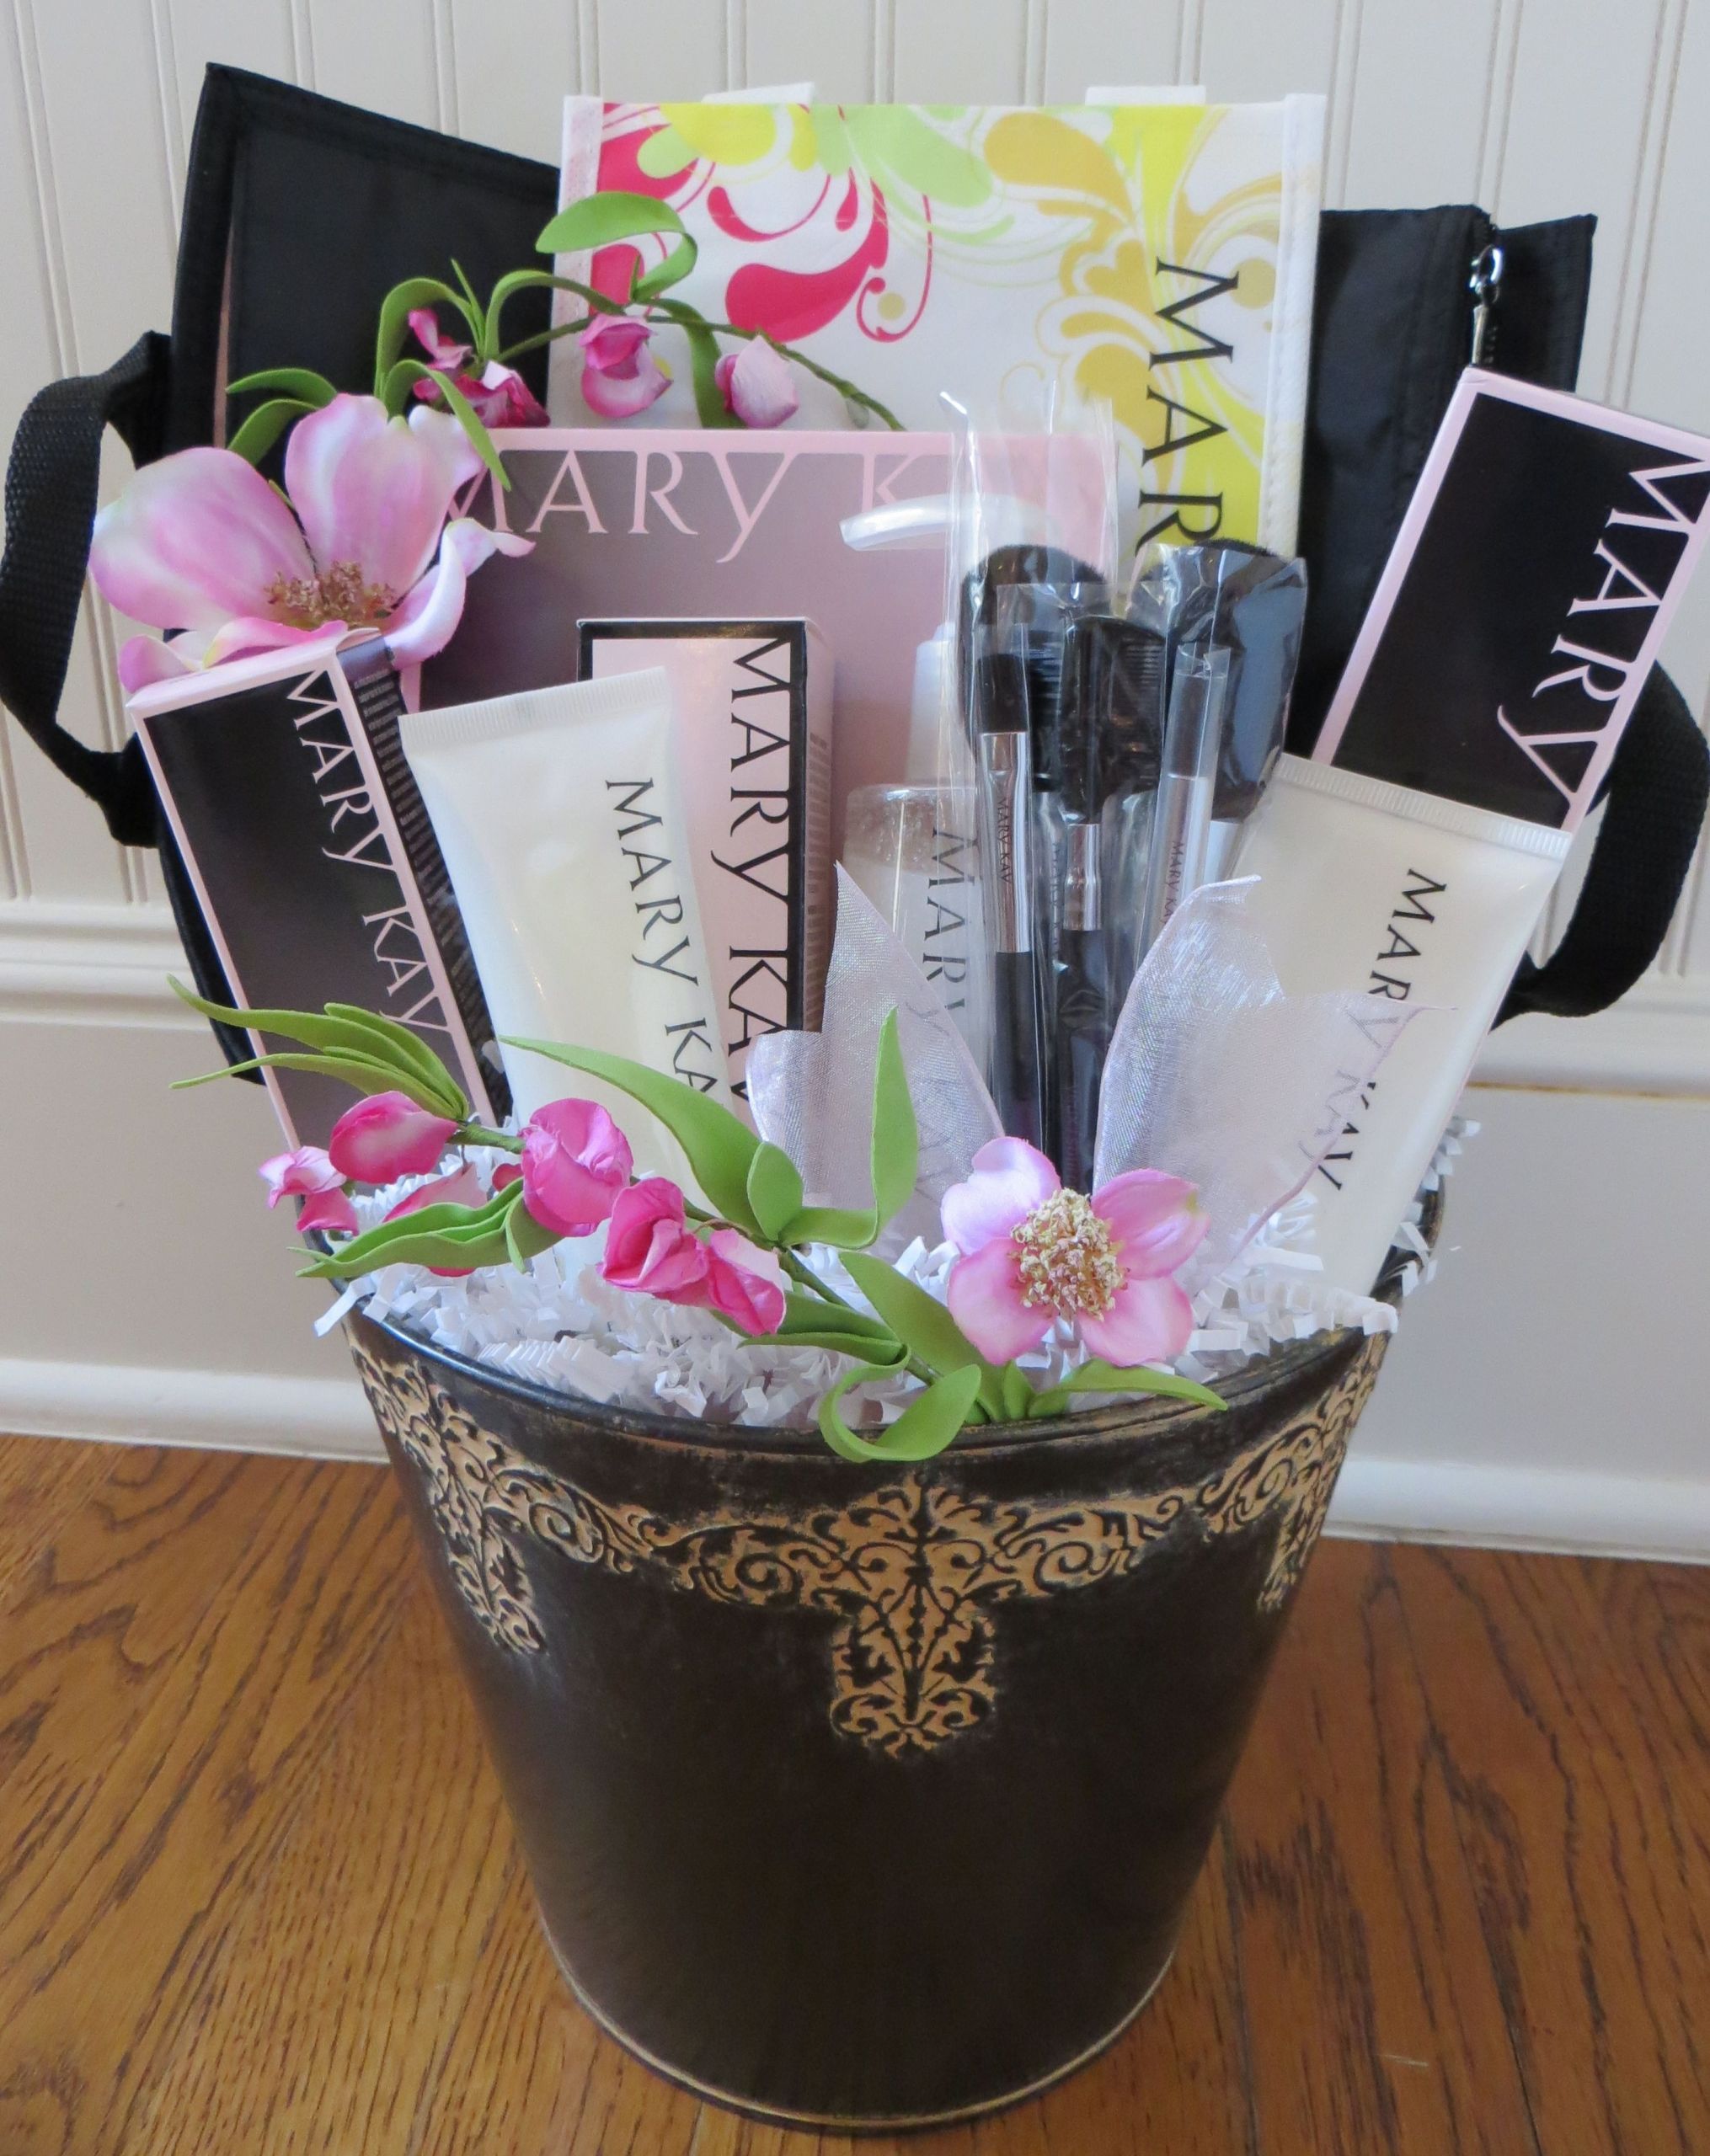 Makeup Gift Basket Ideas
 Celebrating Mary Kay